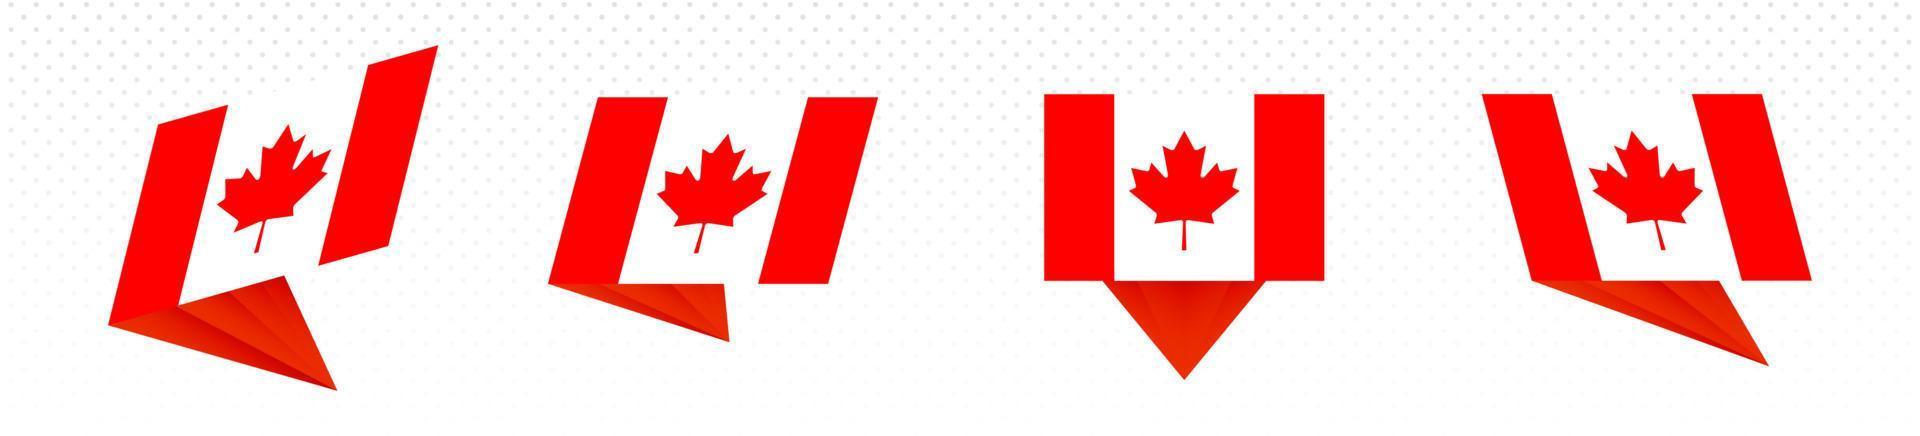 bandiera di Canada nel moderno astratto disegno, bandiera impostare. vettore